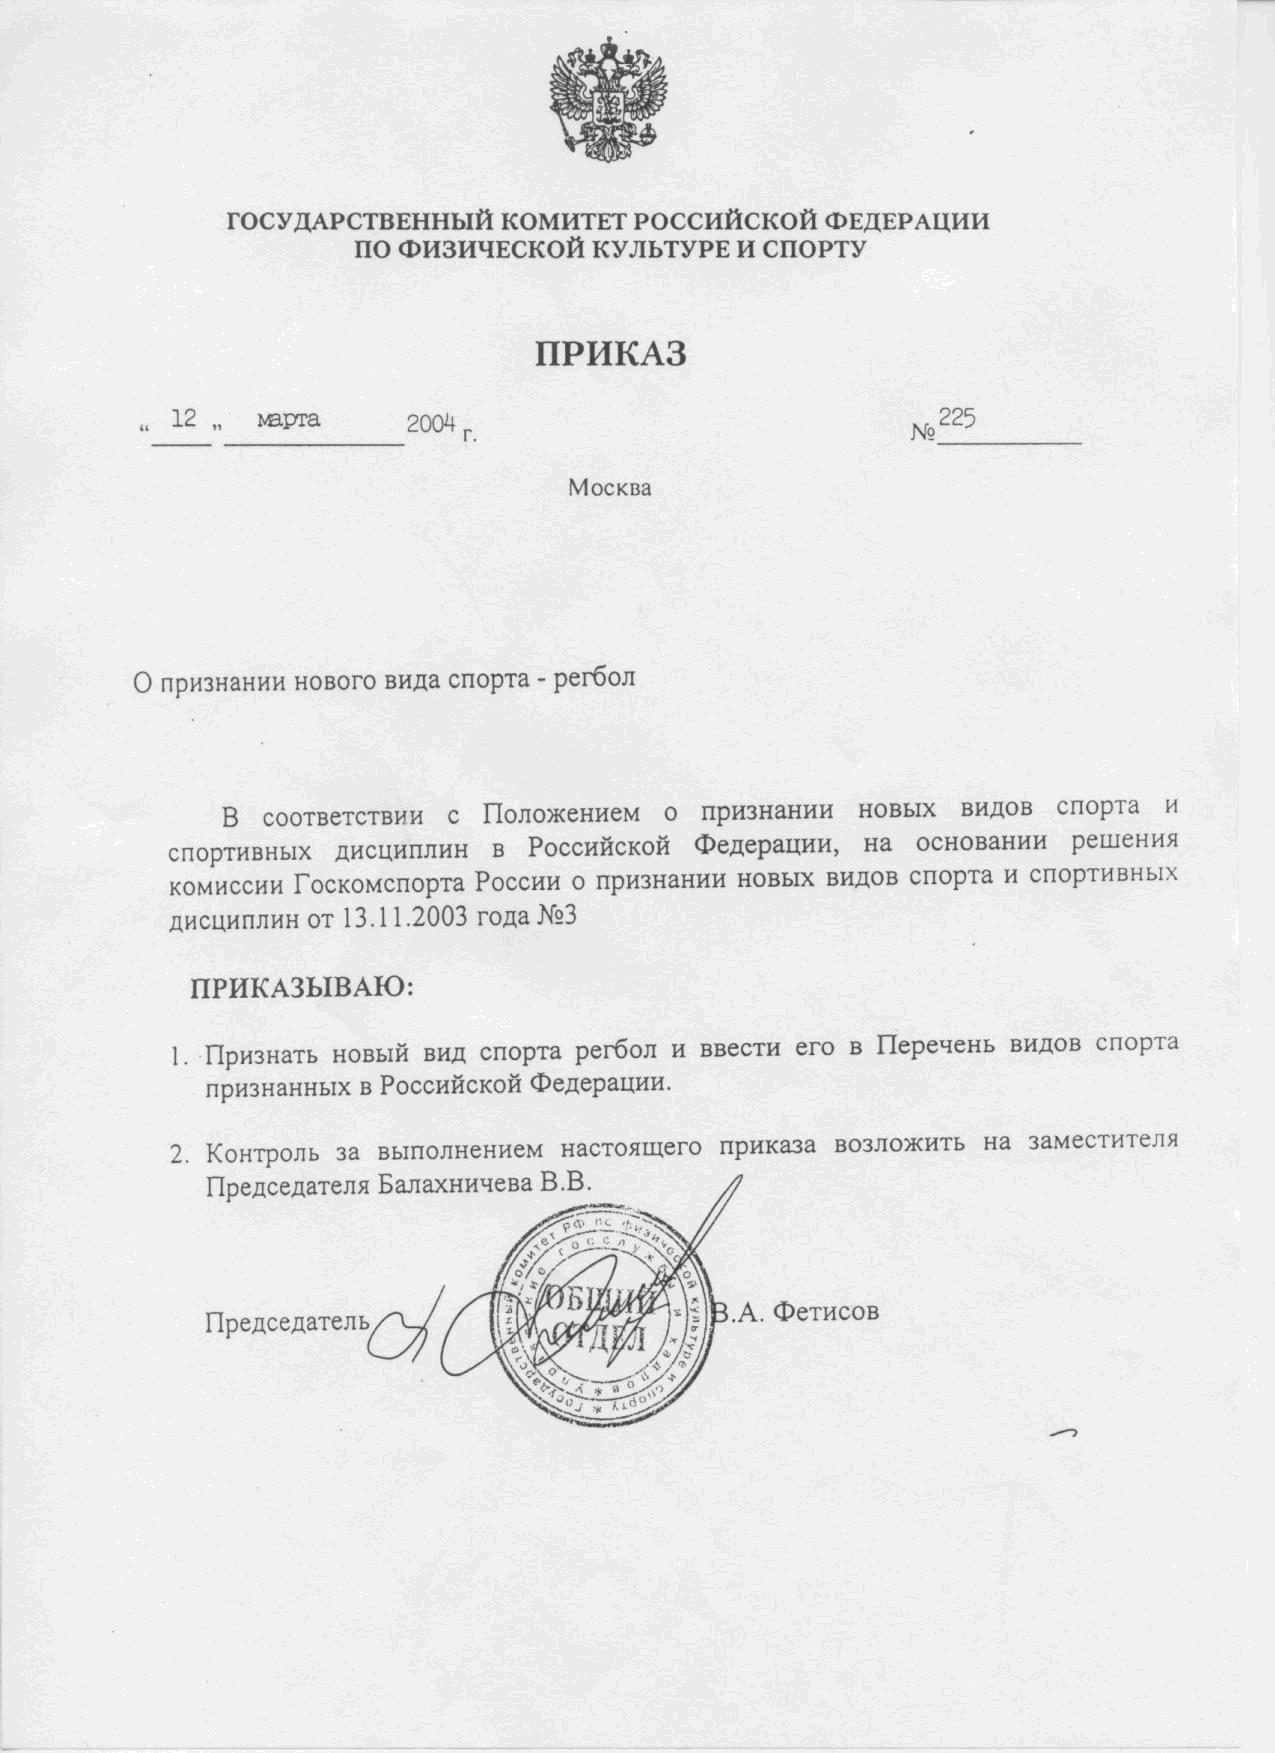 Приказ Госкомспорта России от 12 марта 2004 года N225